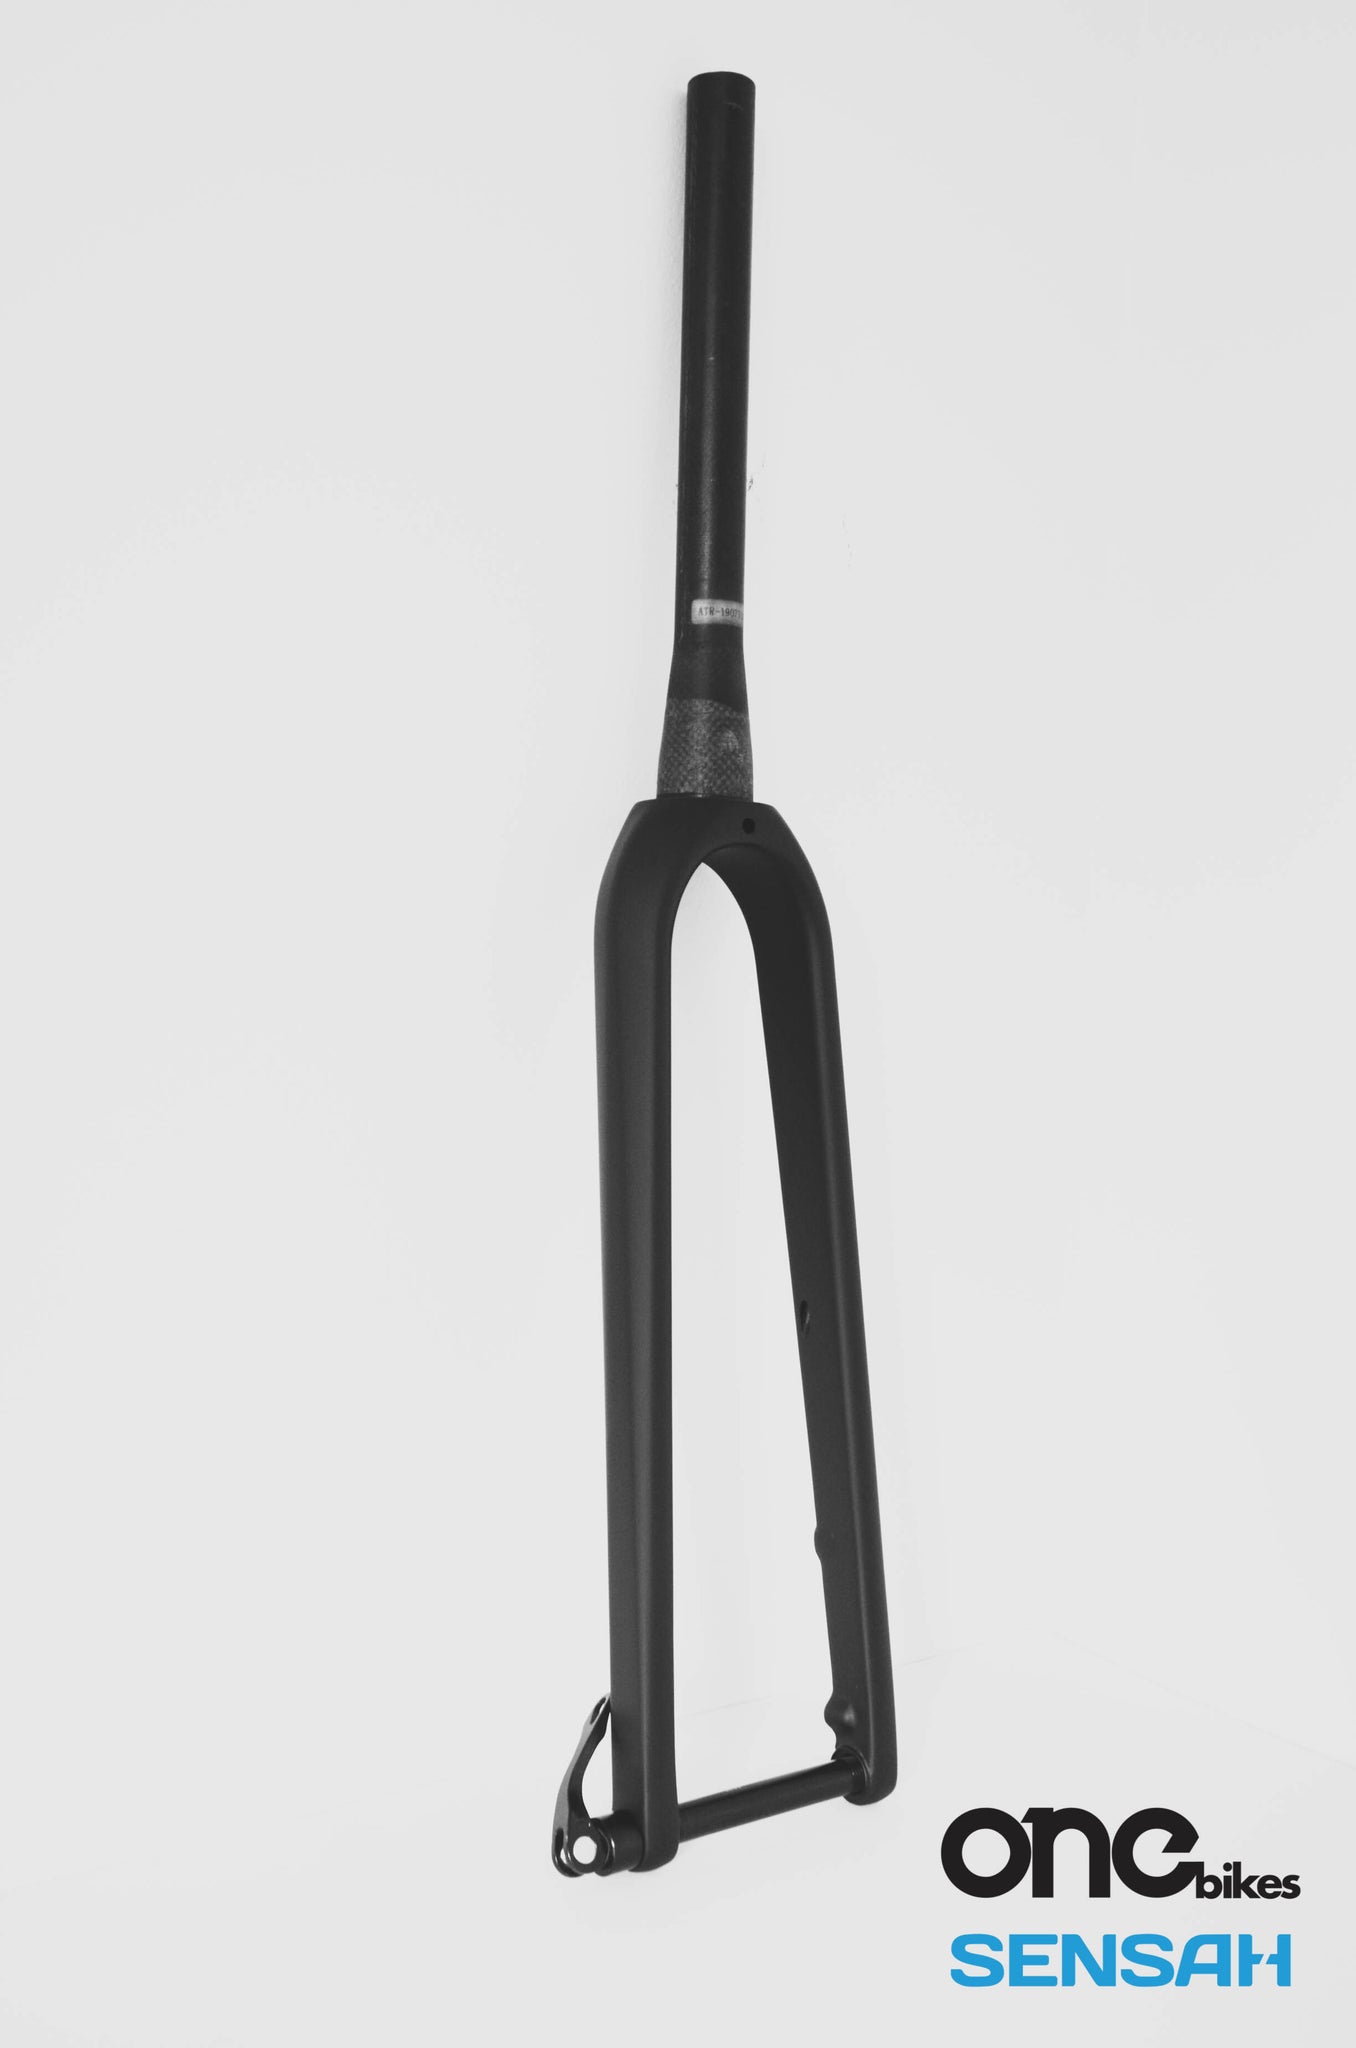 700c carbon fork